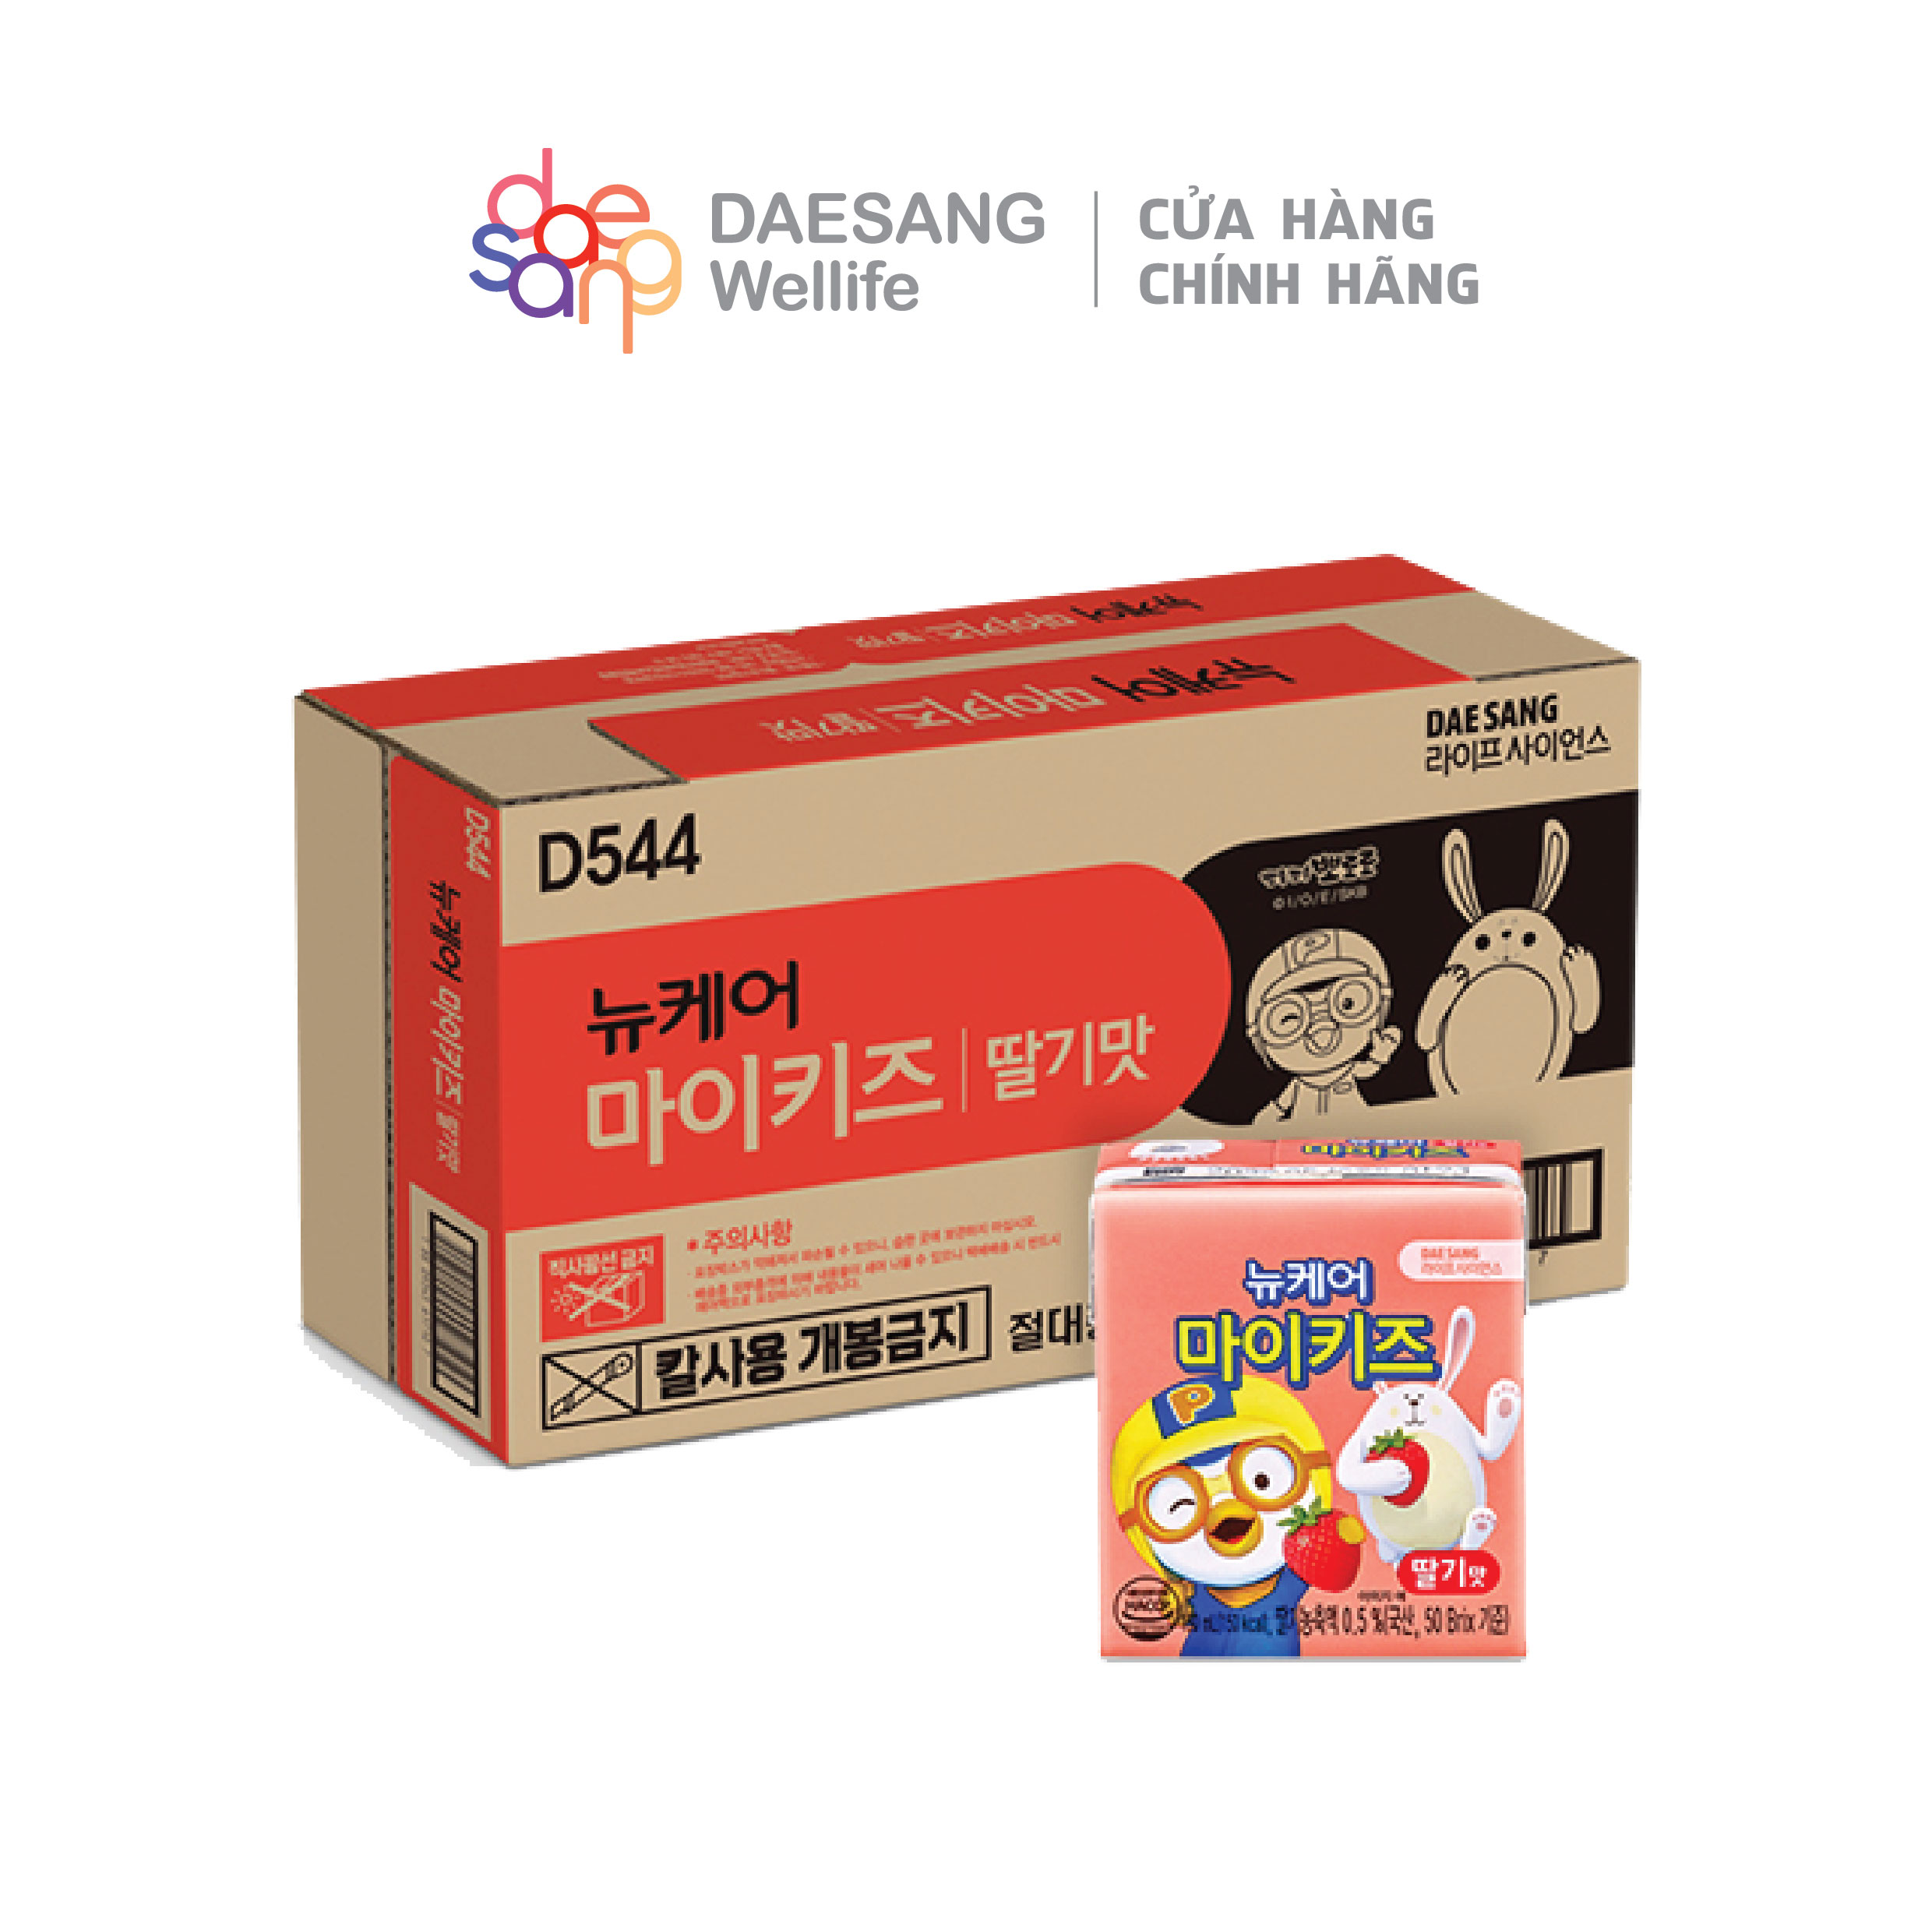 Thùng 24 hộp sữa dinh dưỡng vị dâu Mykids Pororo Hàn Quốc cho bé 150ml